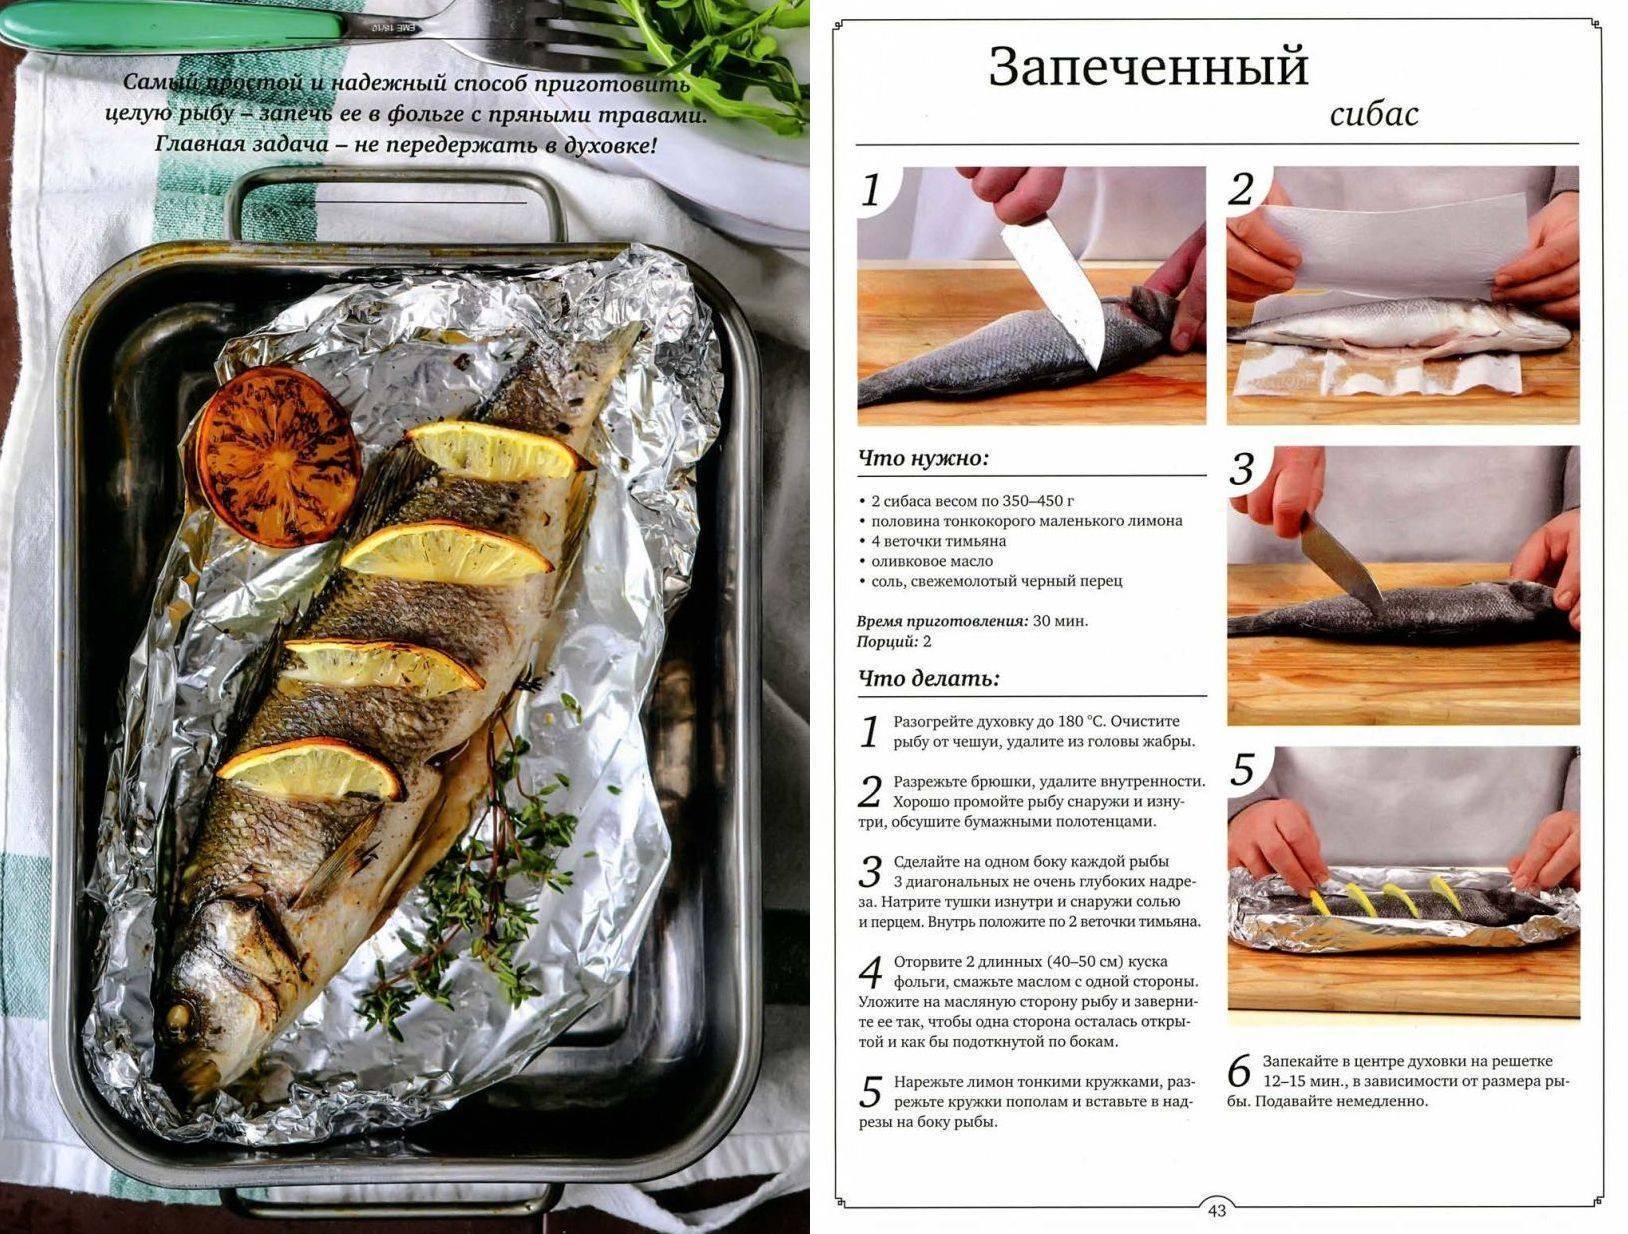 Рецепты из сибаса, 37 рецептов, фото-рецепты